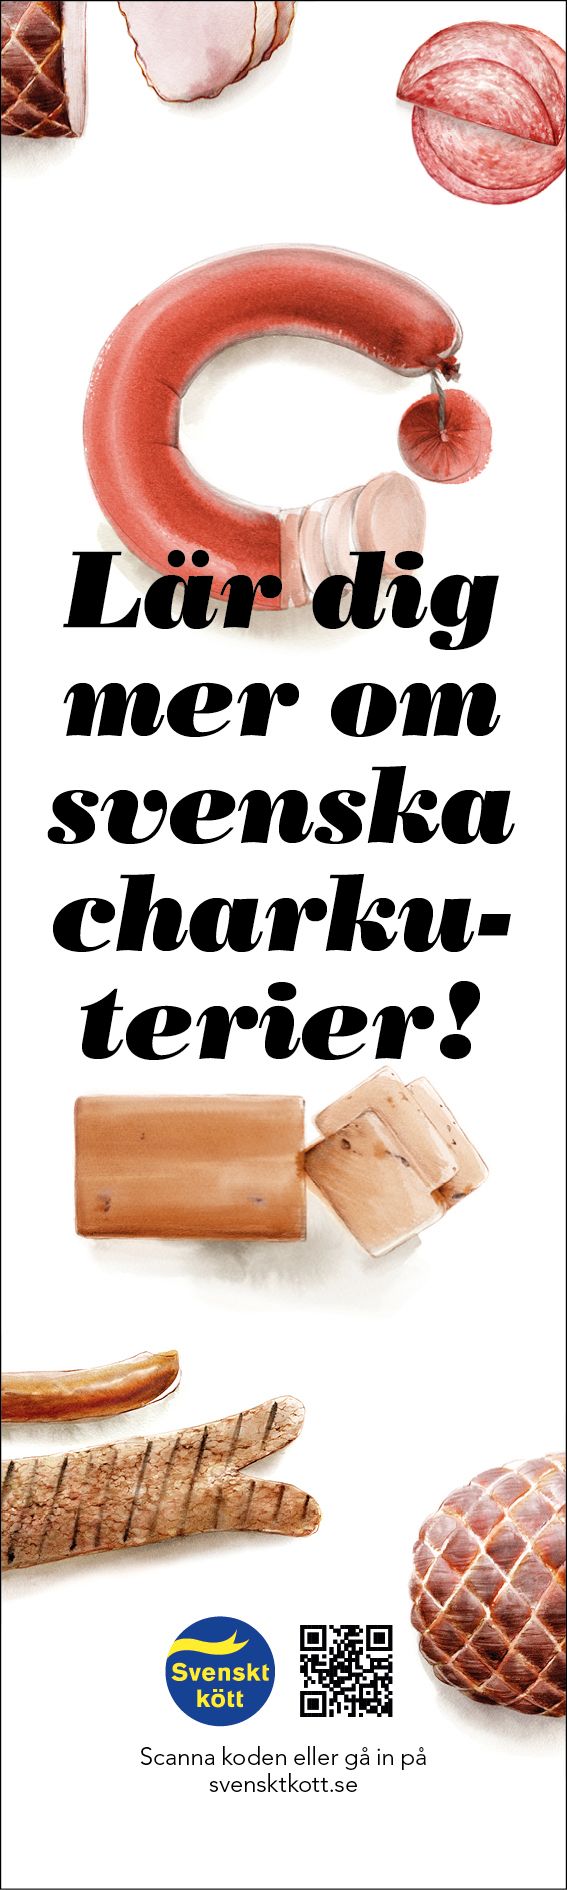 Vepa, "Lär dig mer om svenska charkuterier!"